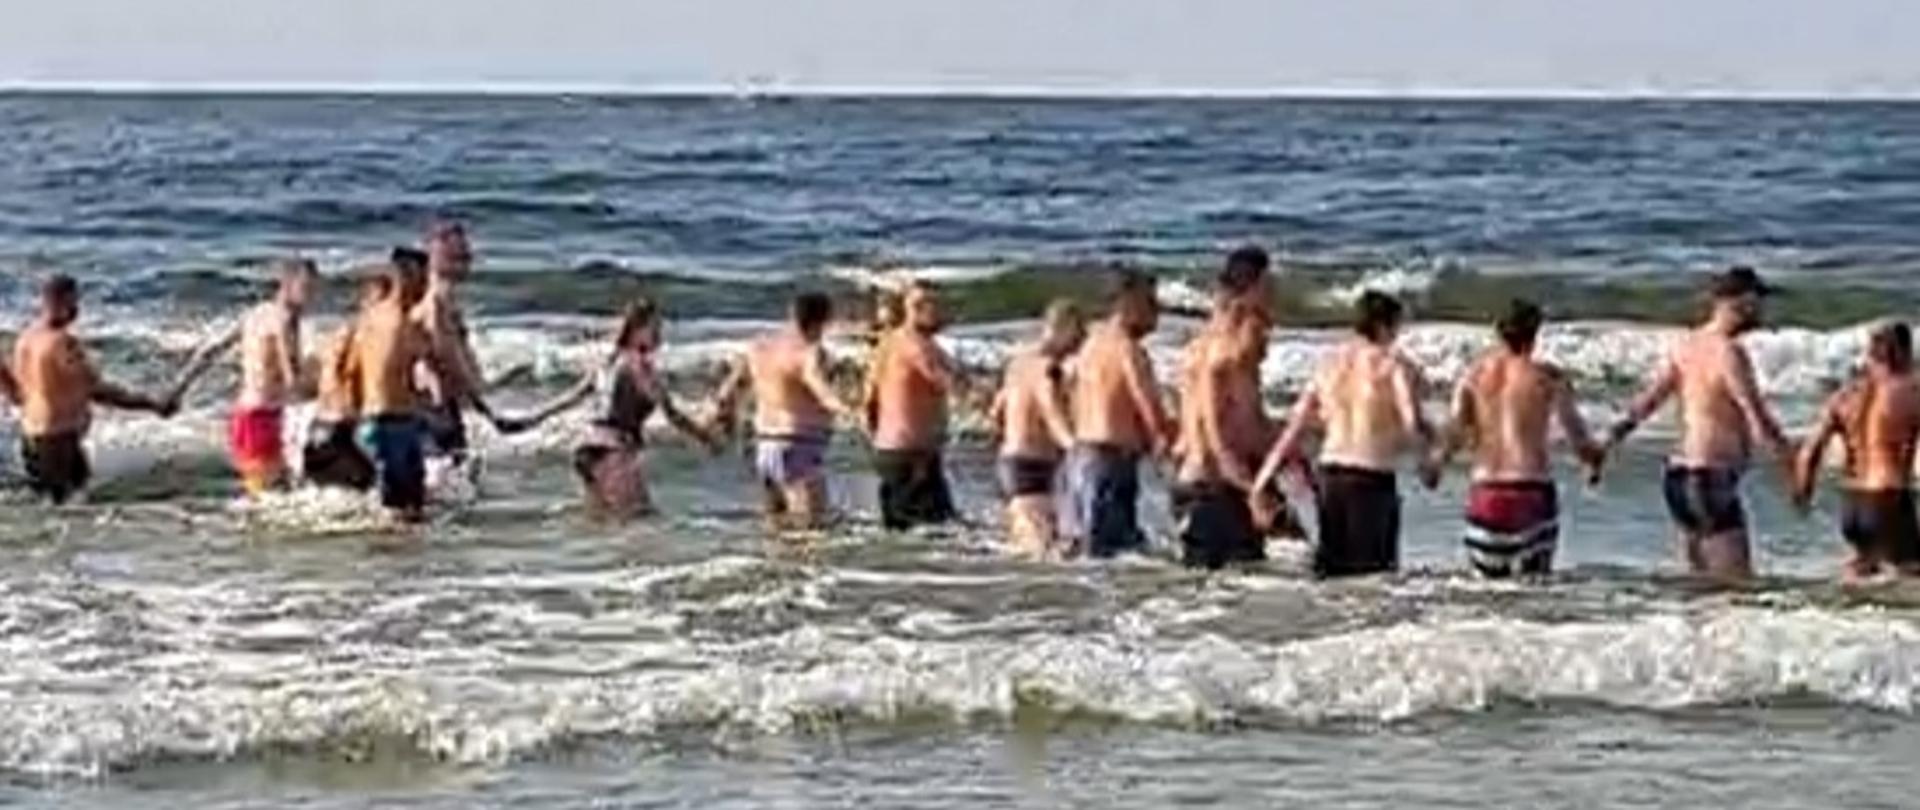 Na zdjęciu widać ludzi w wodzie trzymających się za ręce.